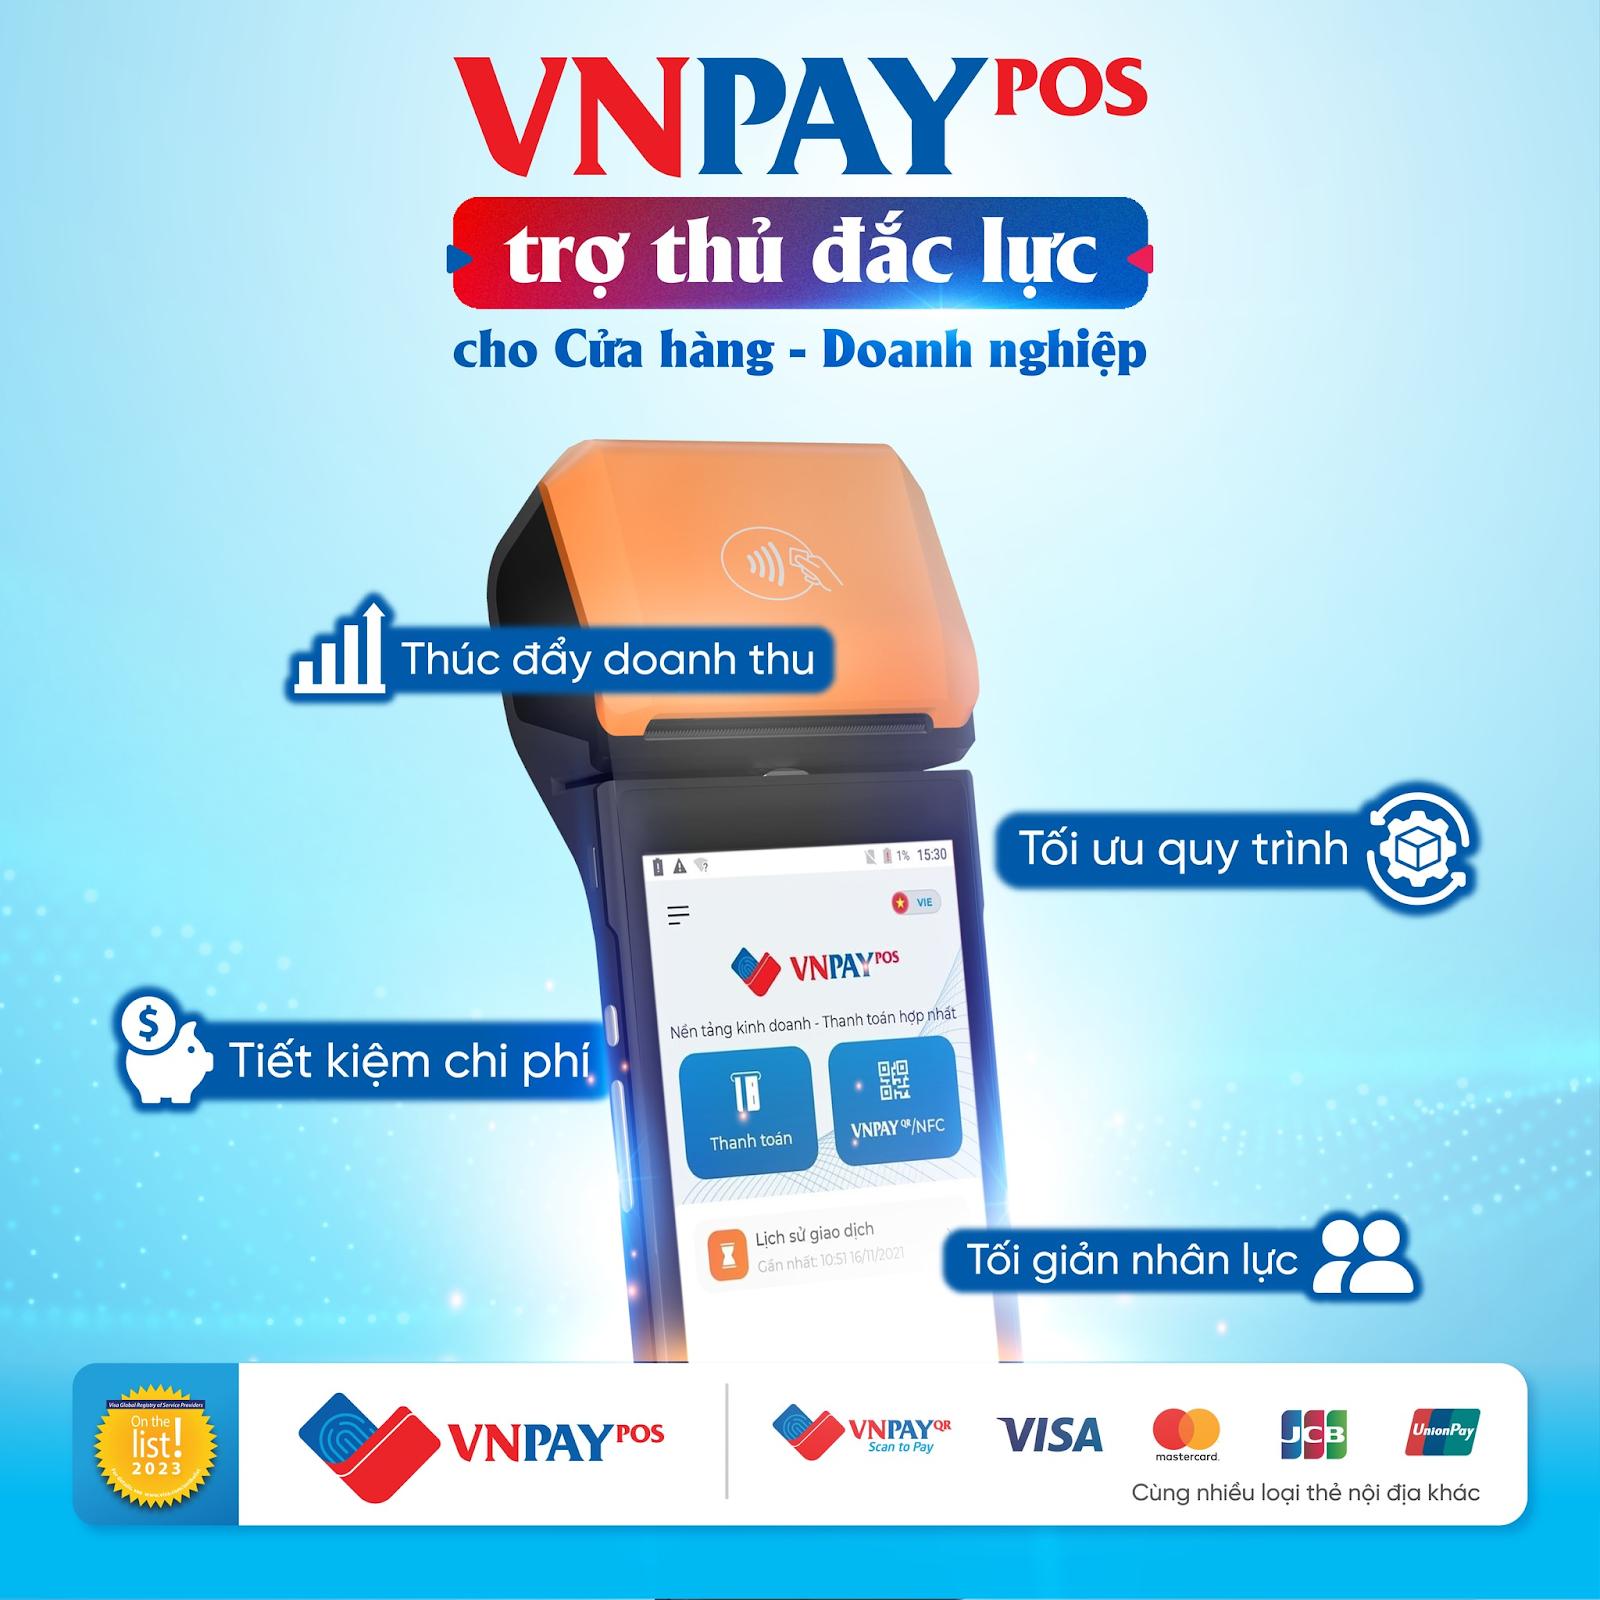 Sử dụng giải pháp thanh toán VNPAY-POS